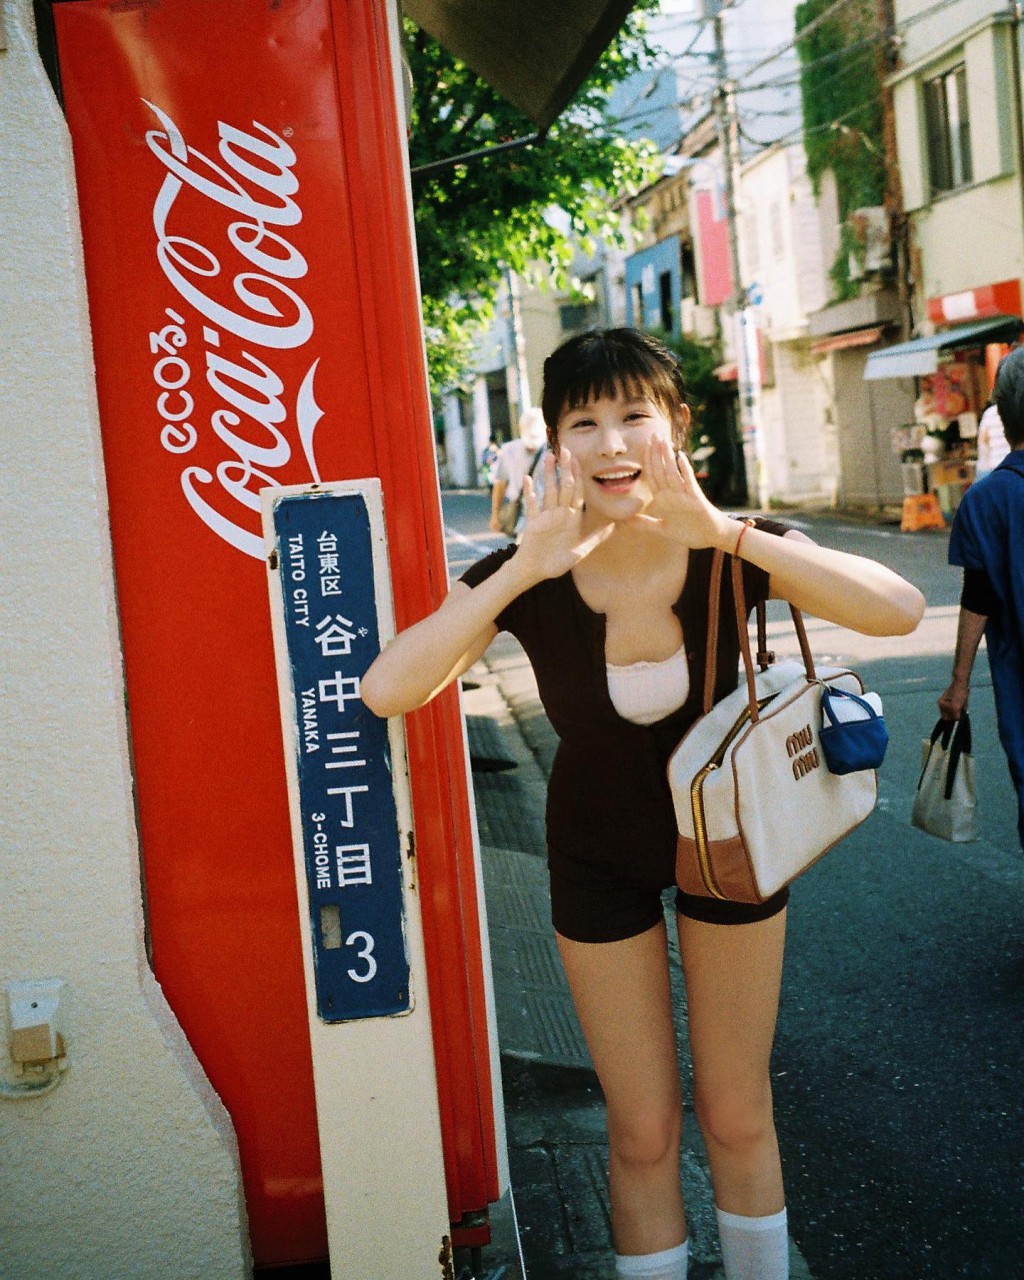 近日古佩玲就身在日本旅行，未知是否事业发展越来越好，她也罕有大派福利，穿上紧身连身短裤。